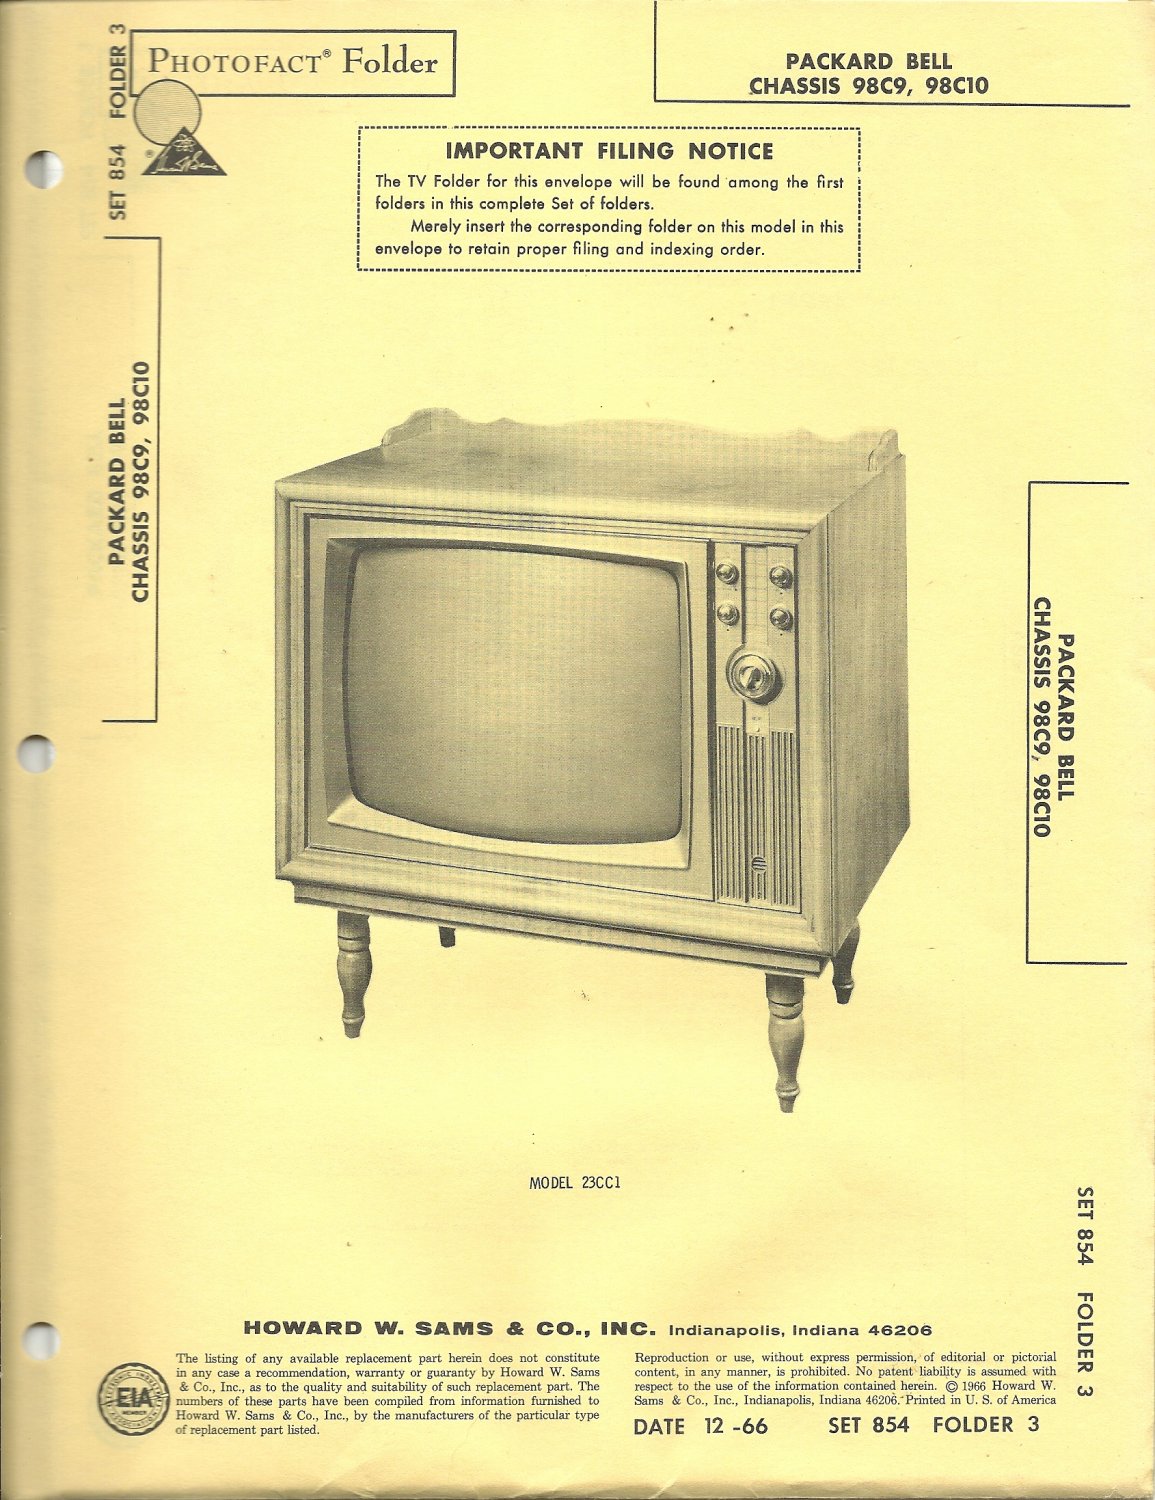 SAMS Photofact - Set 854 - Folder 3 - Dec 1966 - PACKARD BELL CHASSIS 98C9, 98C10